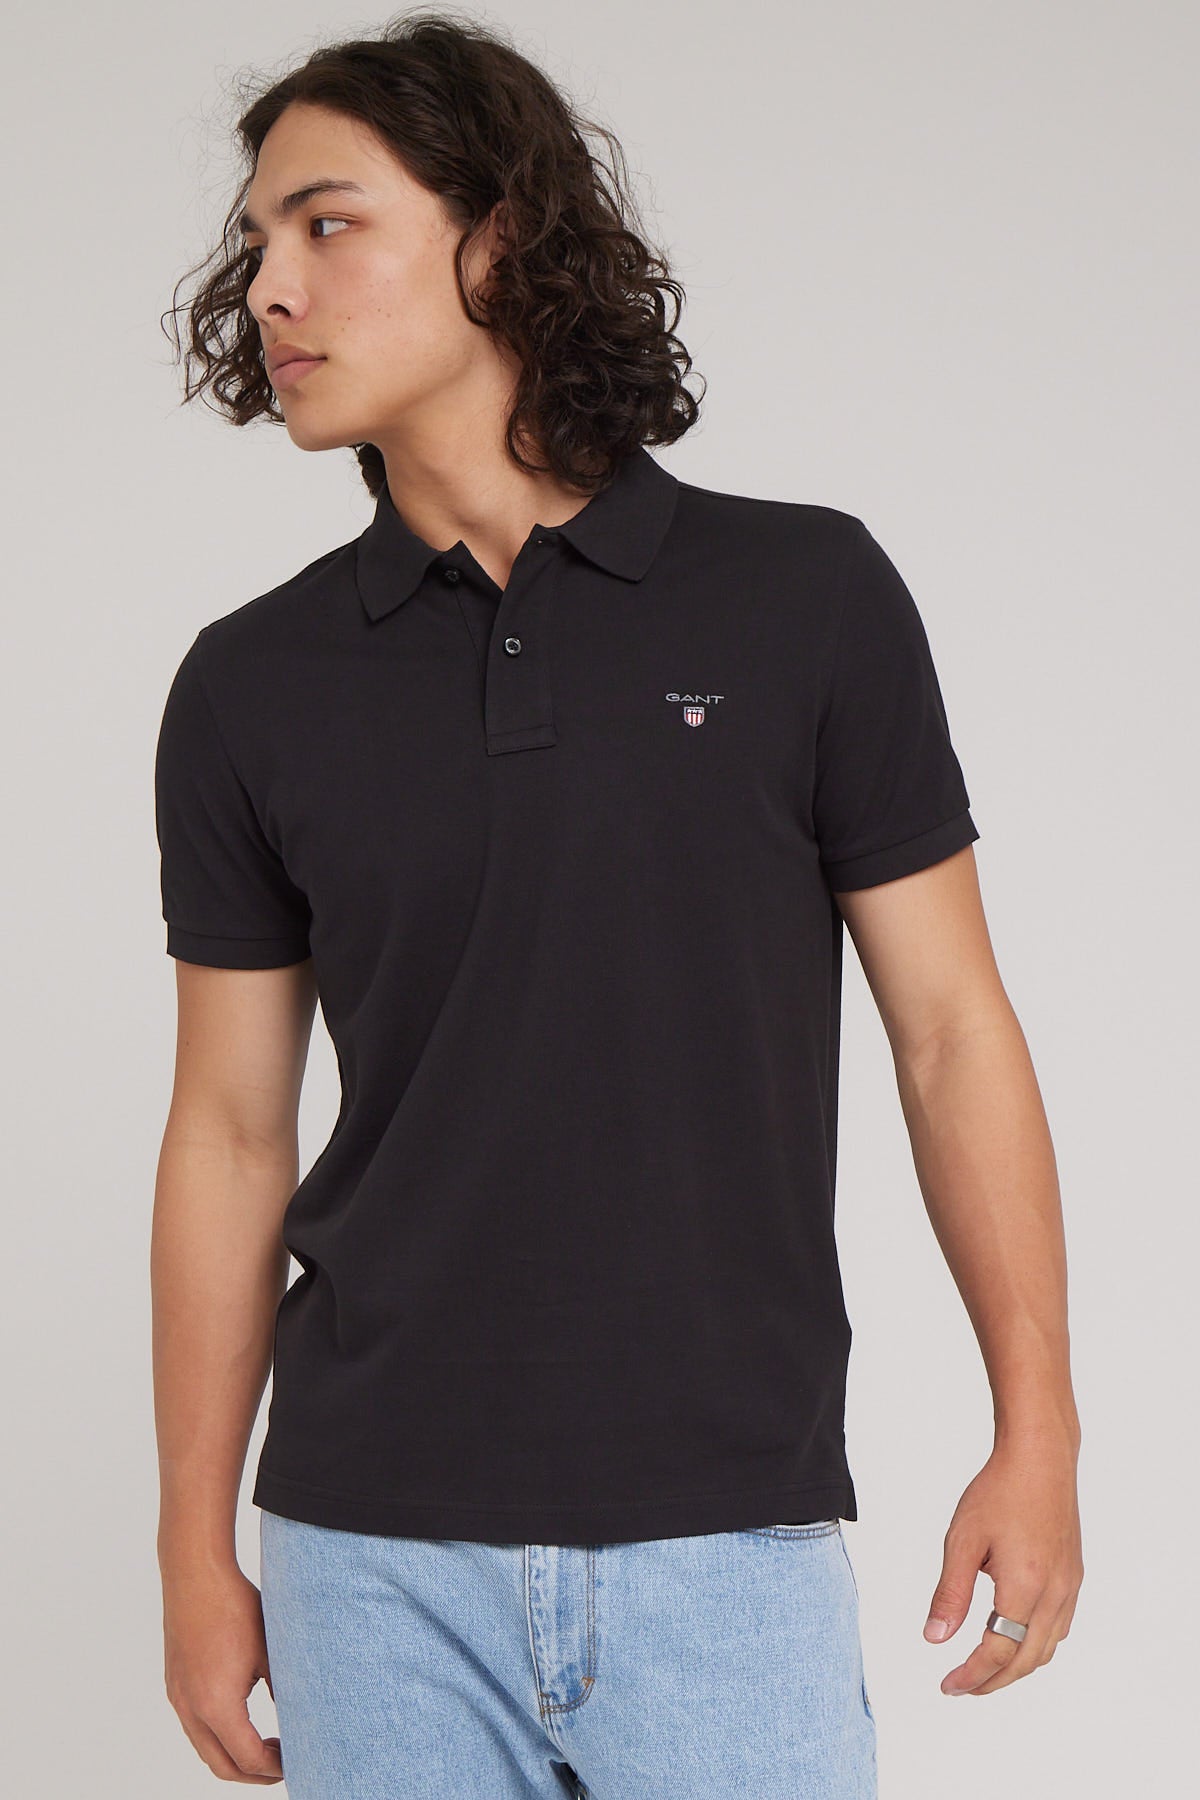 Gant The Original Pique Polo Shirt Black – Universal Store